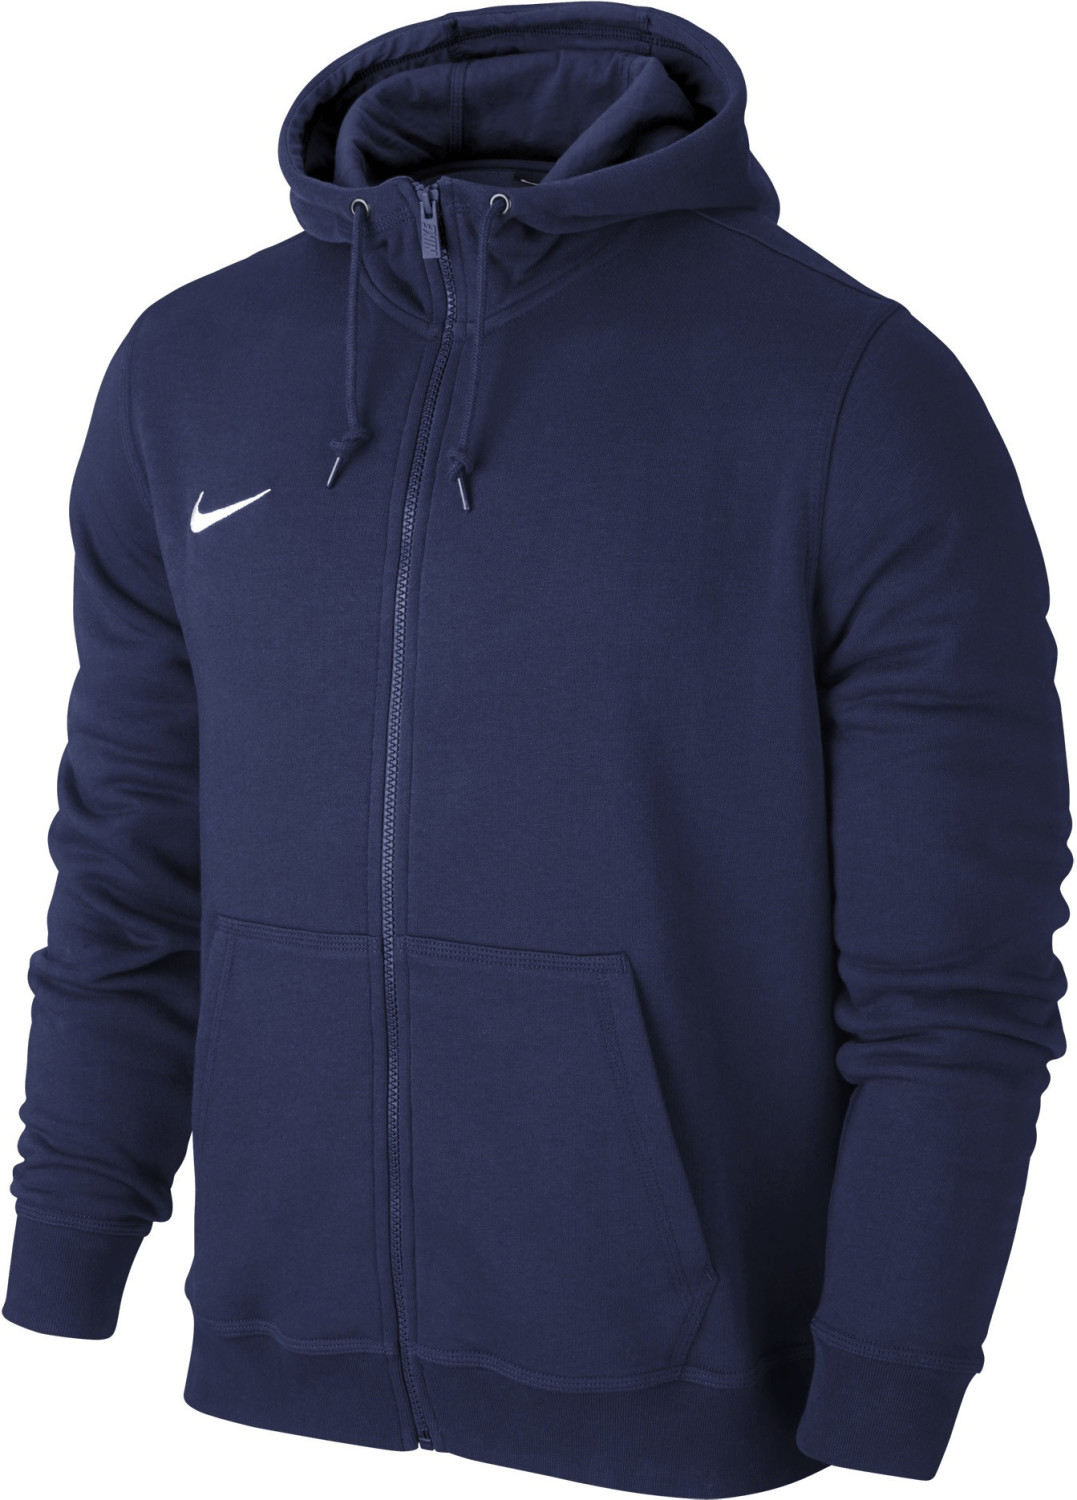 Nike Team Club Full Zip (658497-451) navy blue